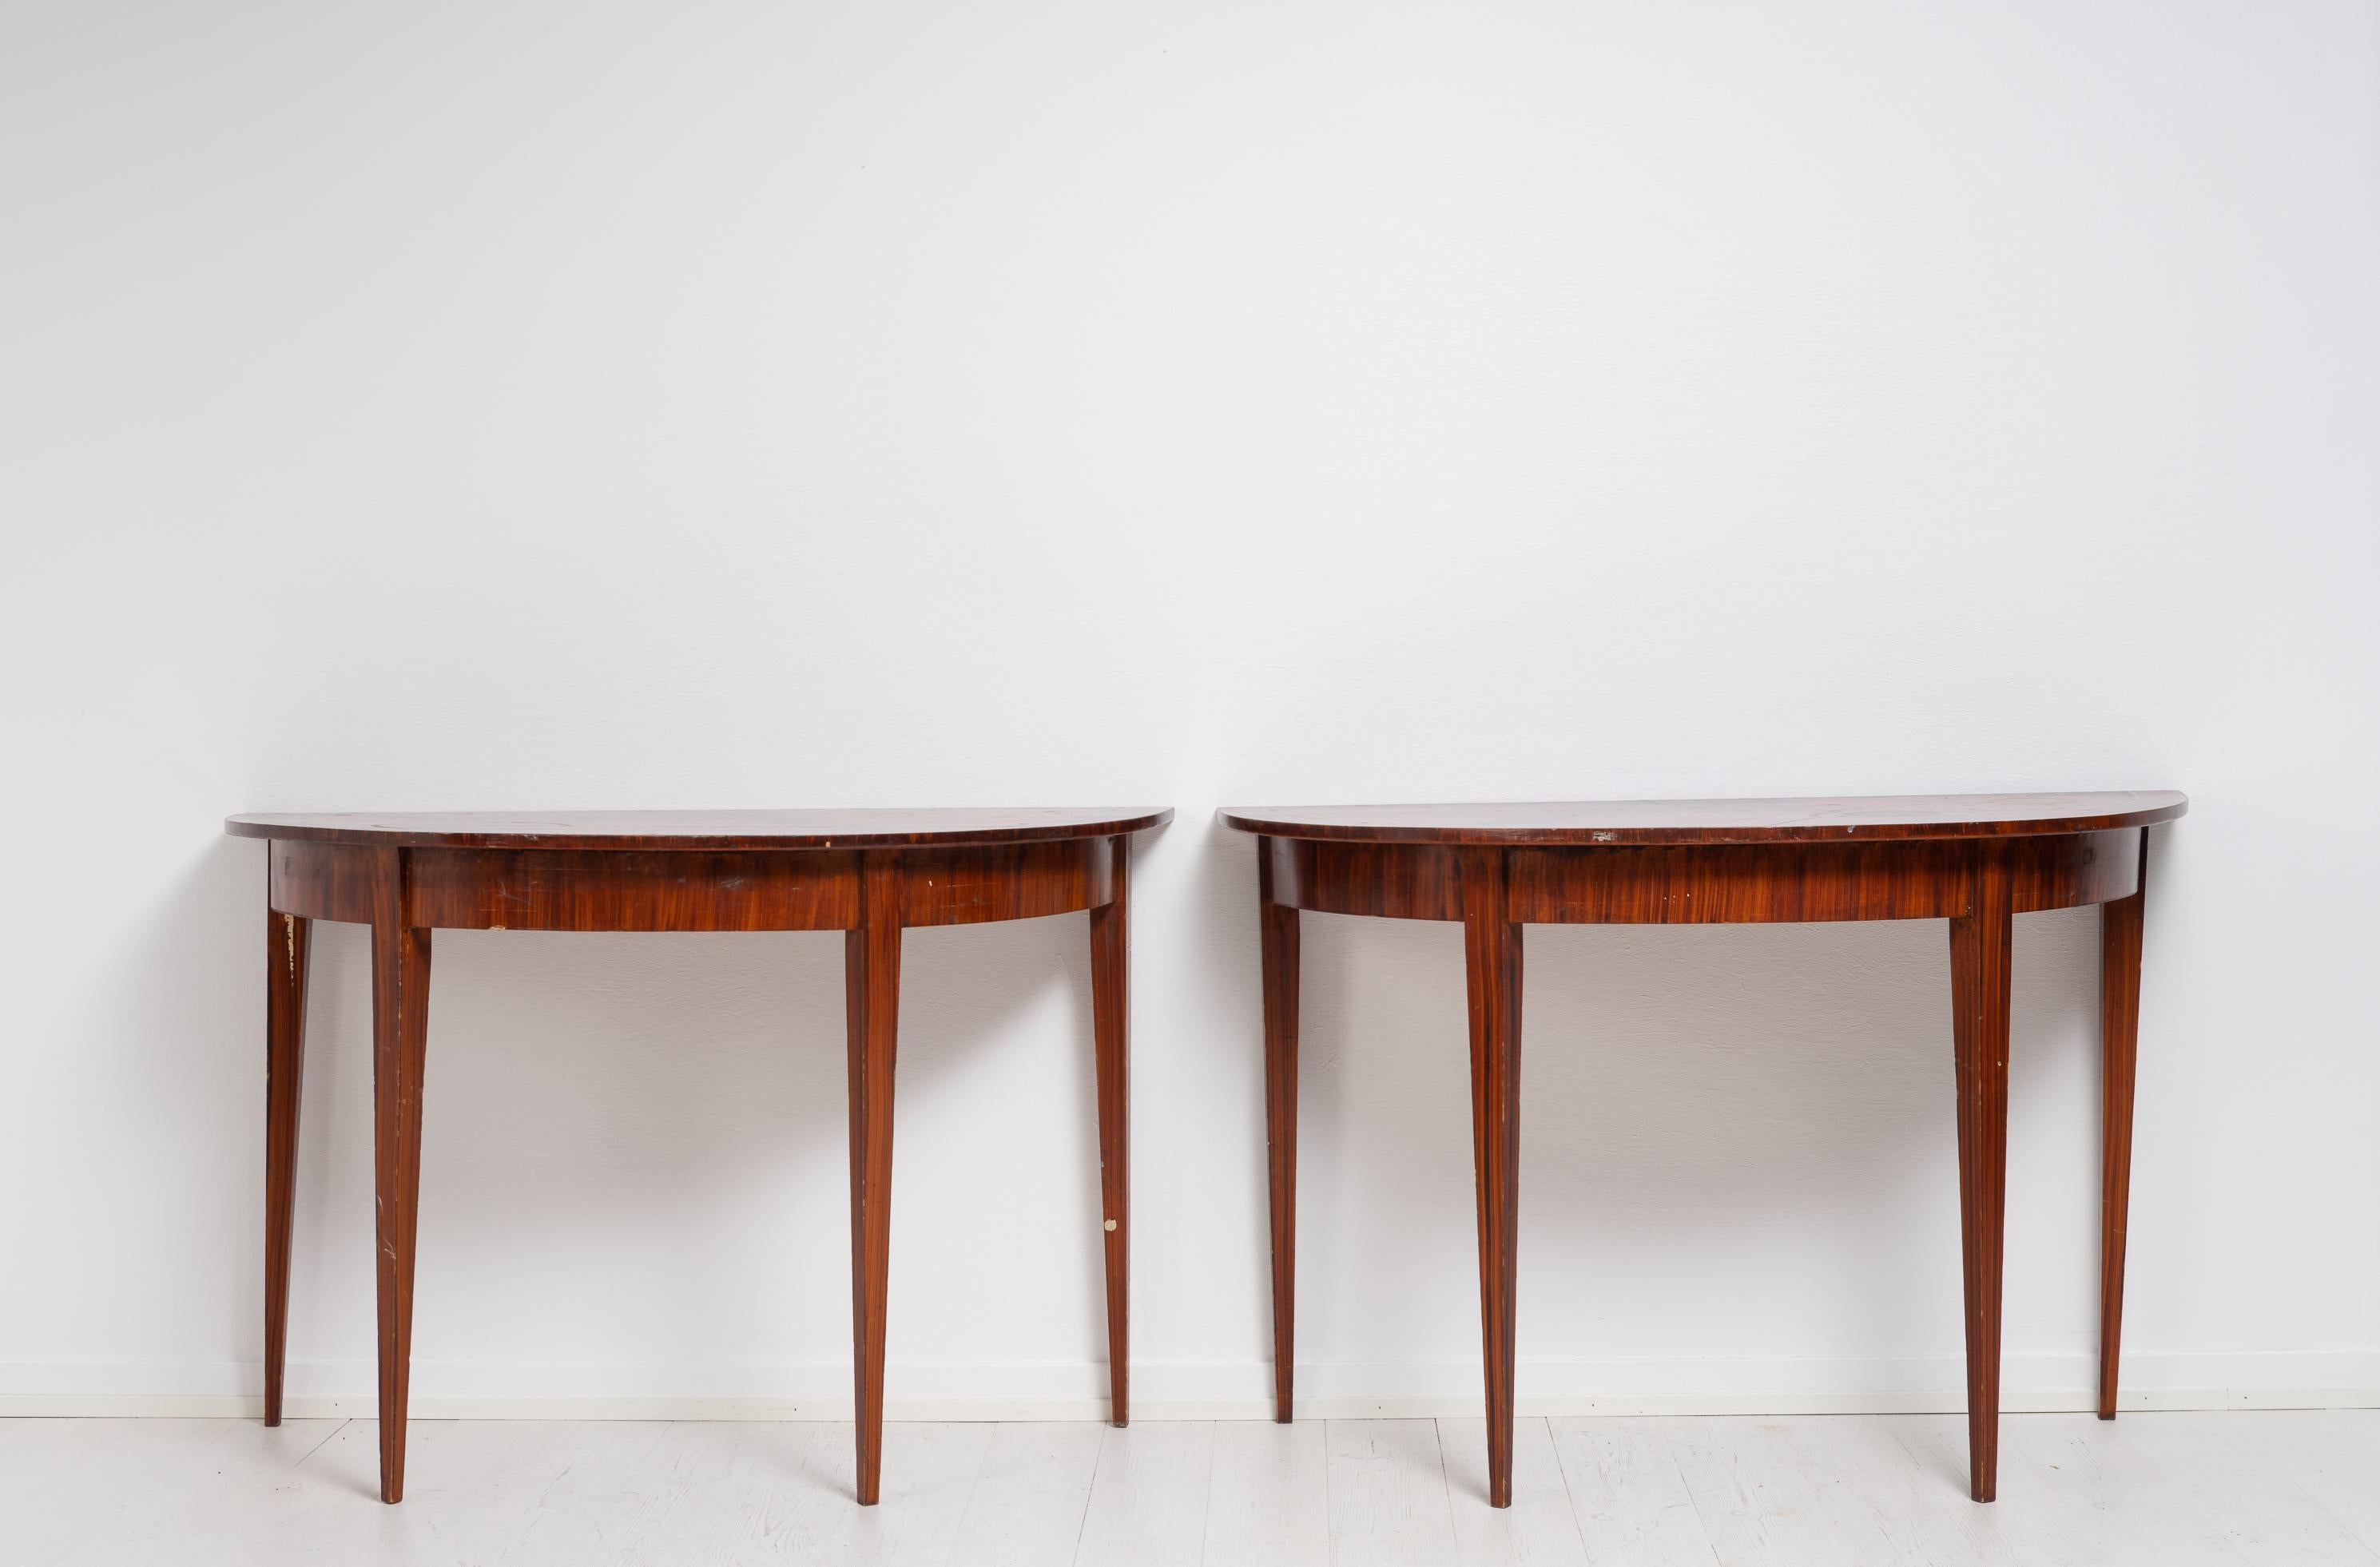 Nordschwedischer Konsol- oder Demi-Lune-Tisch in einem etwas ungewöhnlichen Modell, bei dem jede Hälfte vier Beine hat. Hergestellt aus Kiefer mit der originalen Lackierung. Die Tischplatte ist sehr dekorativ, mit einem geometrischen Stern in der